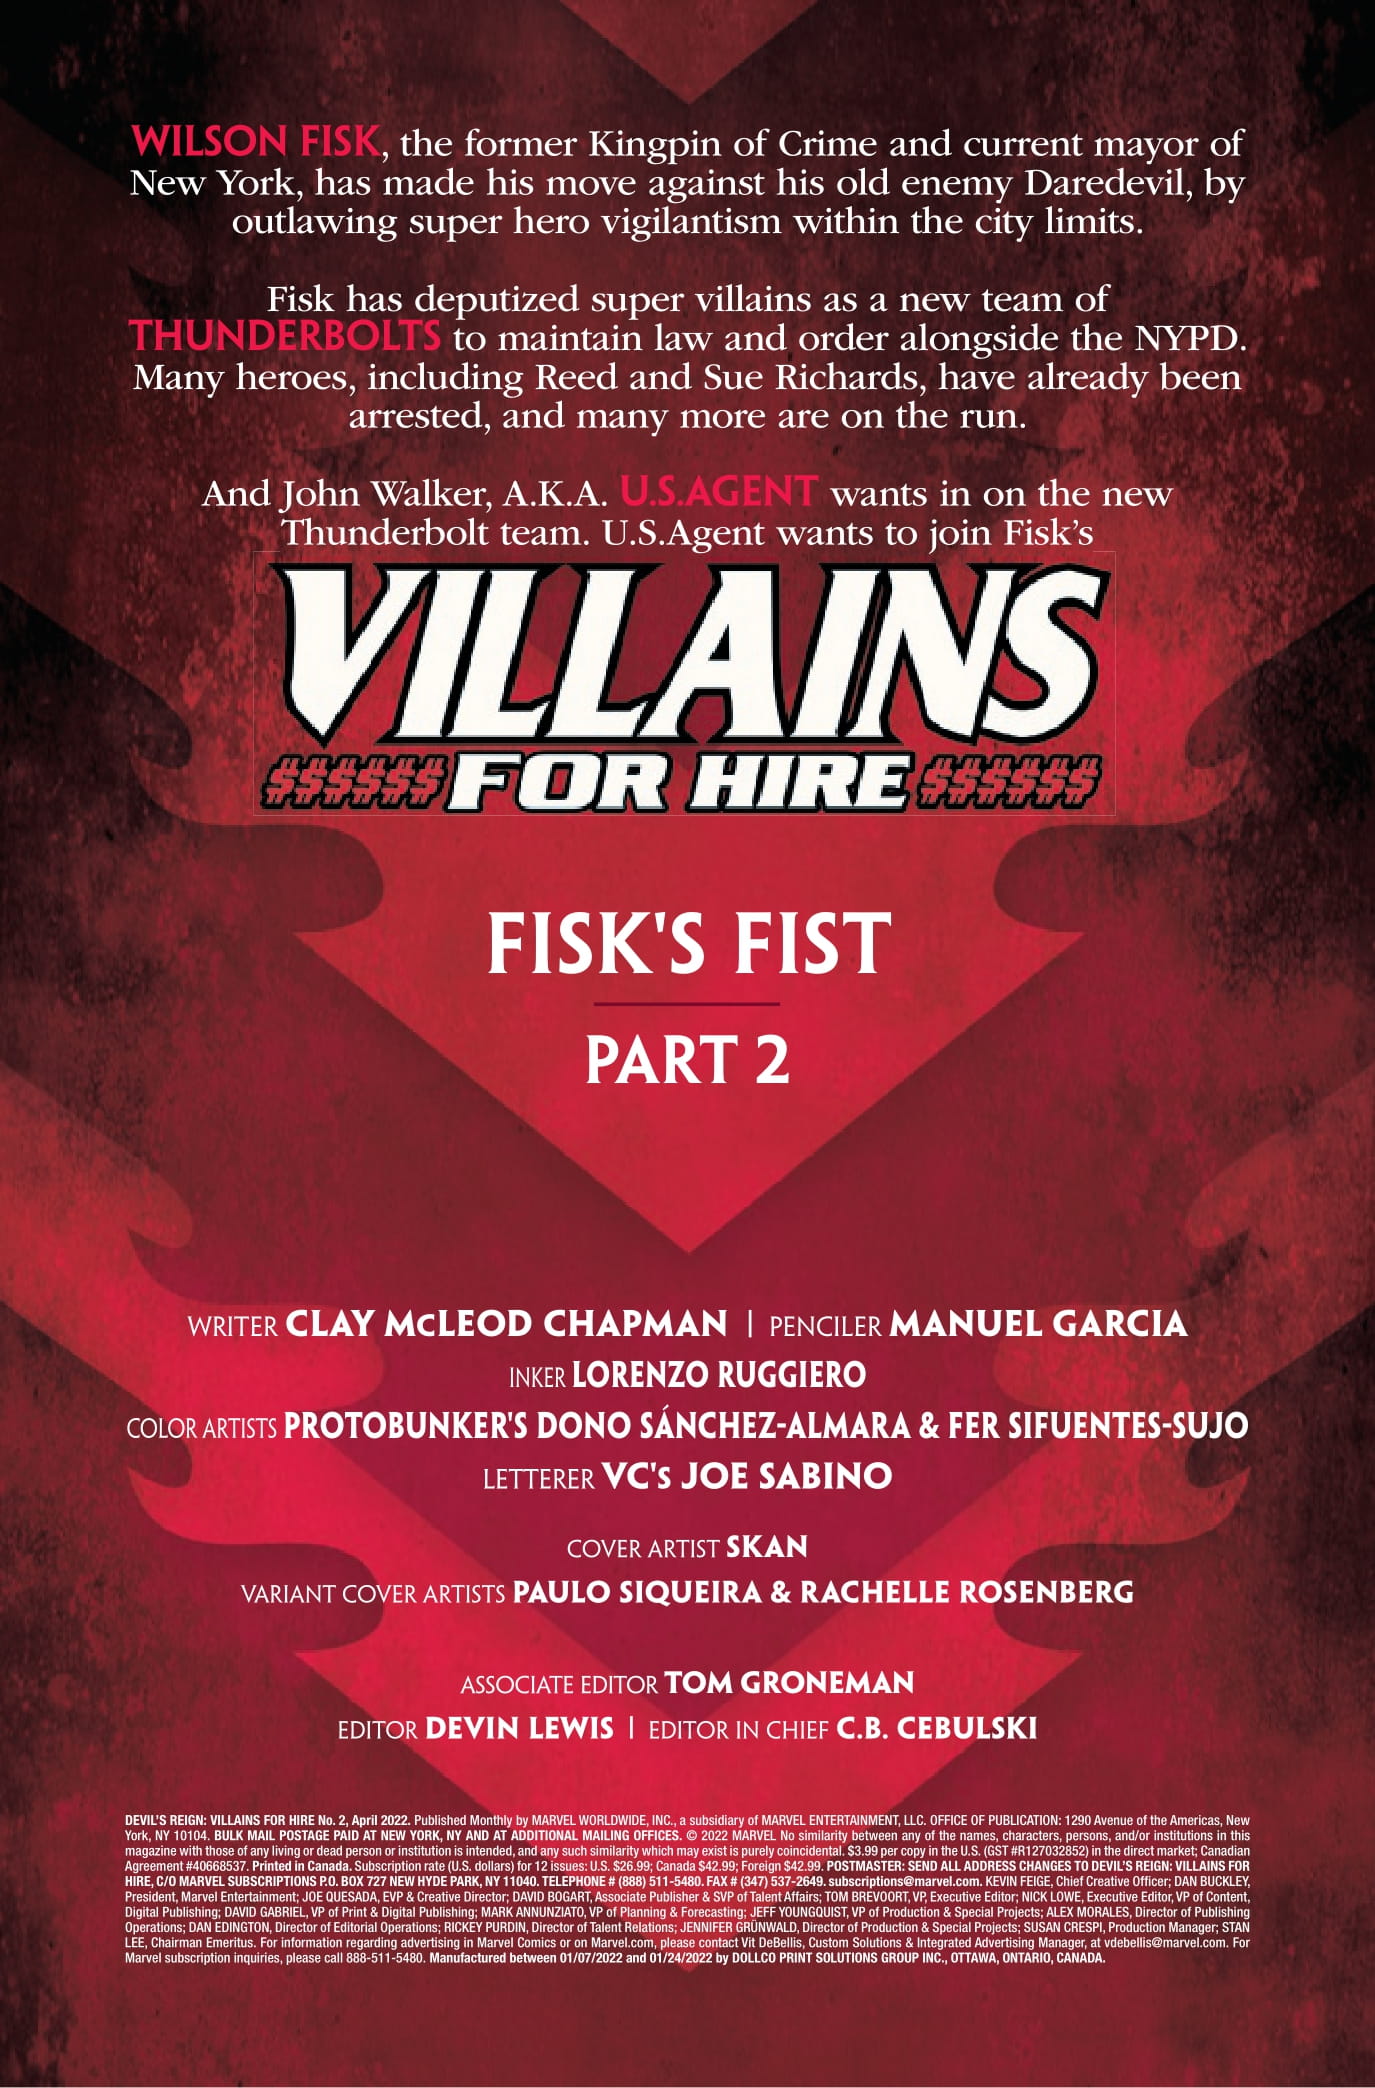 devils-reign-villains-for-hire-2-p1